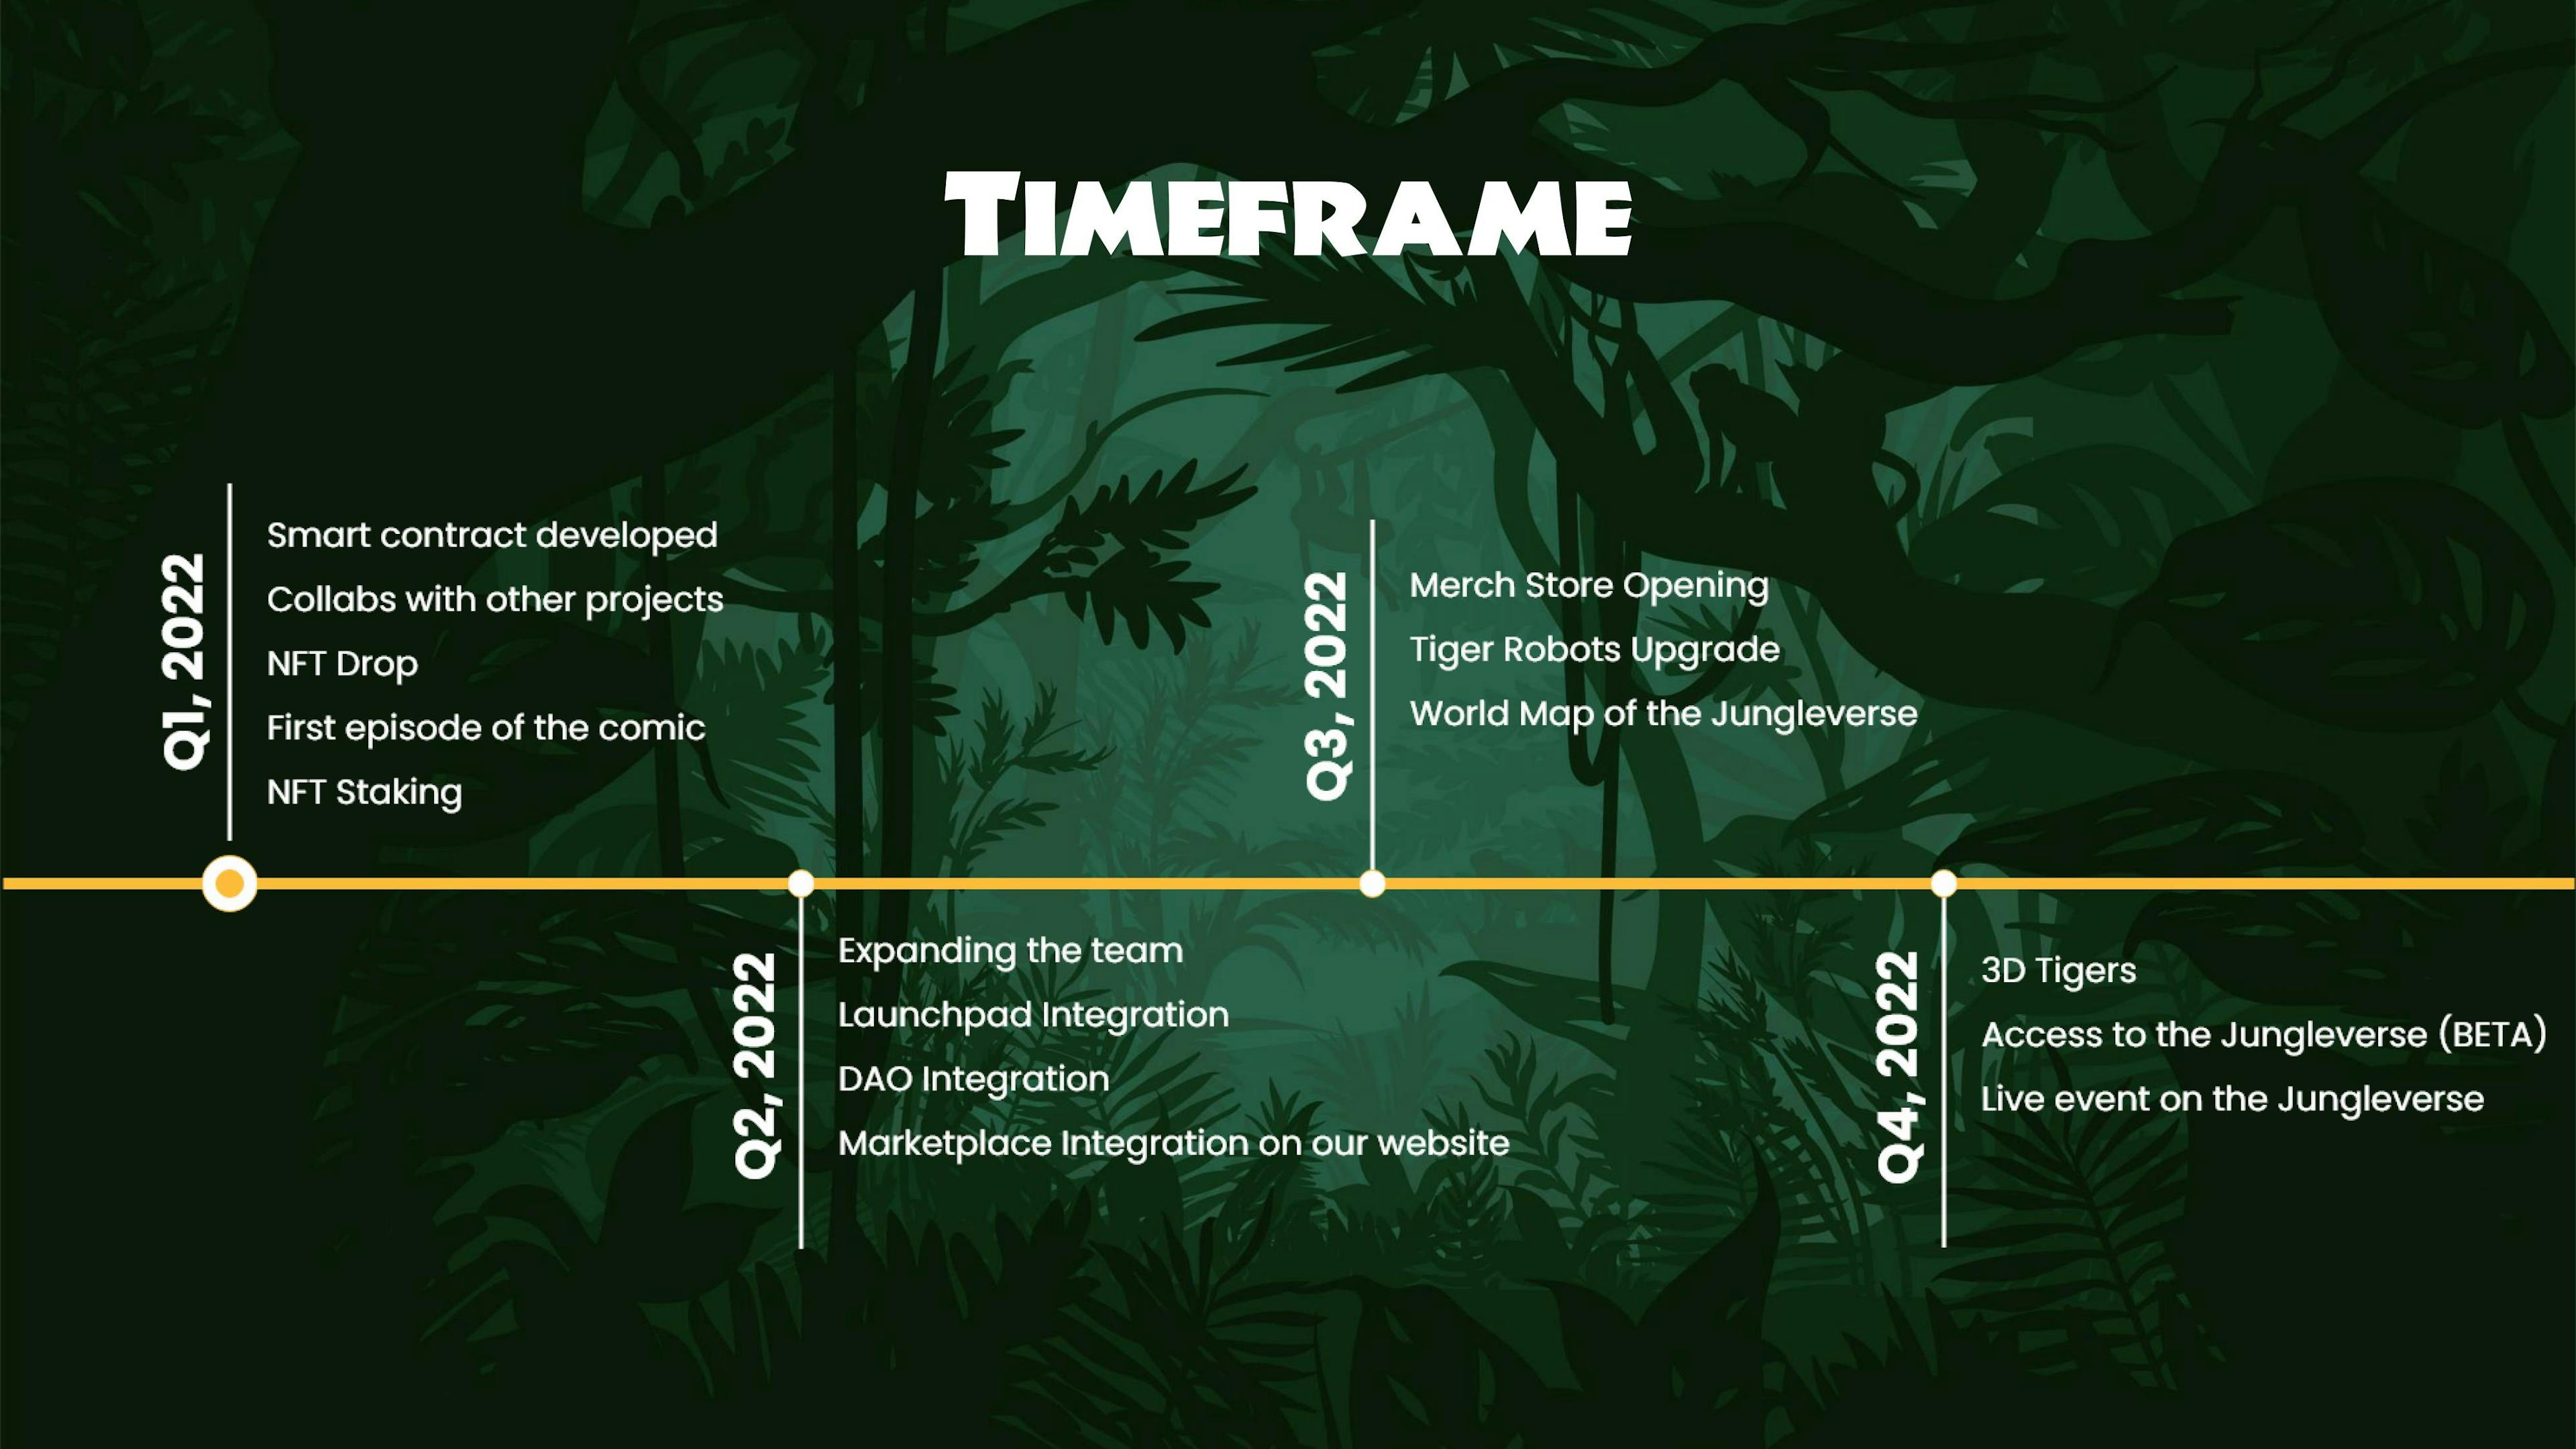 TimeFrame in 2022